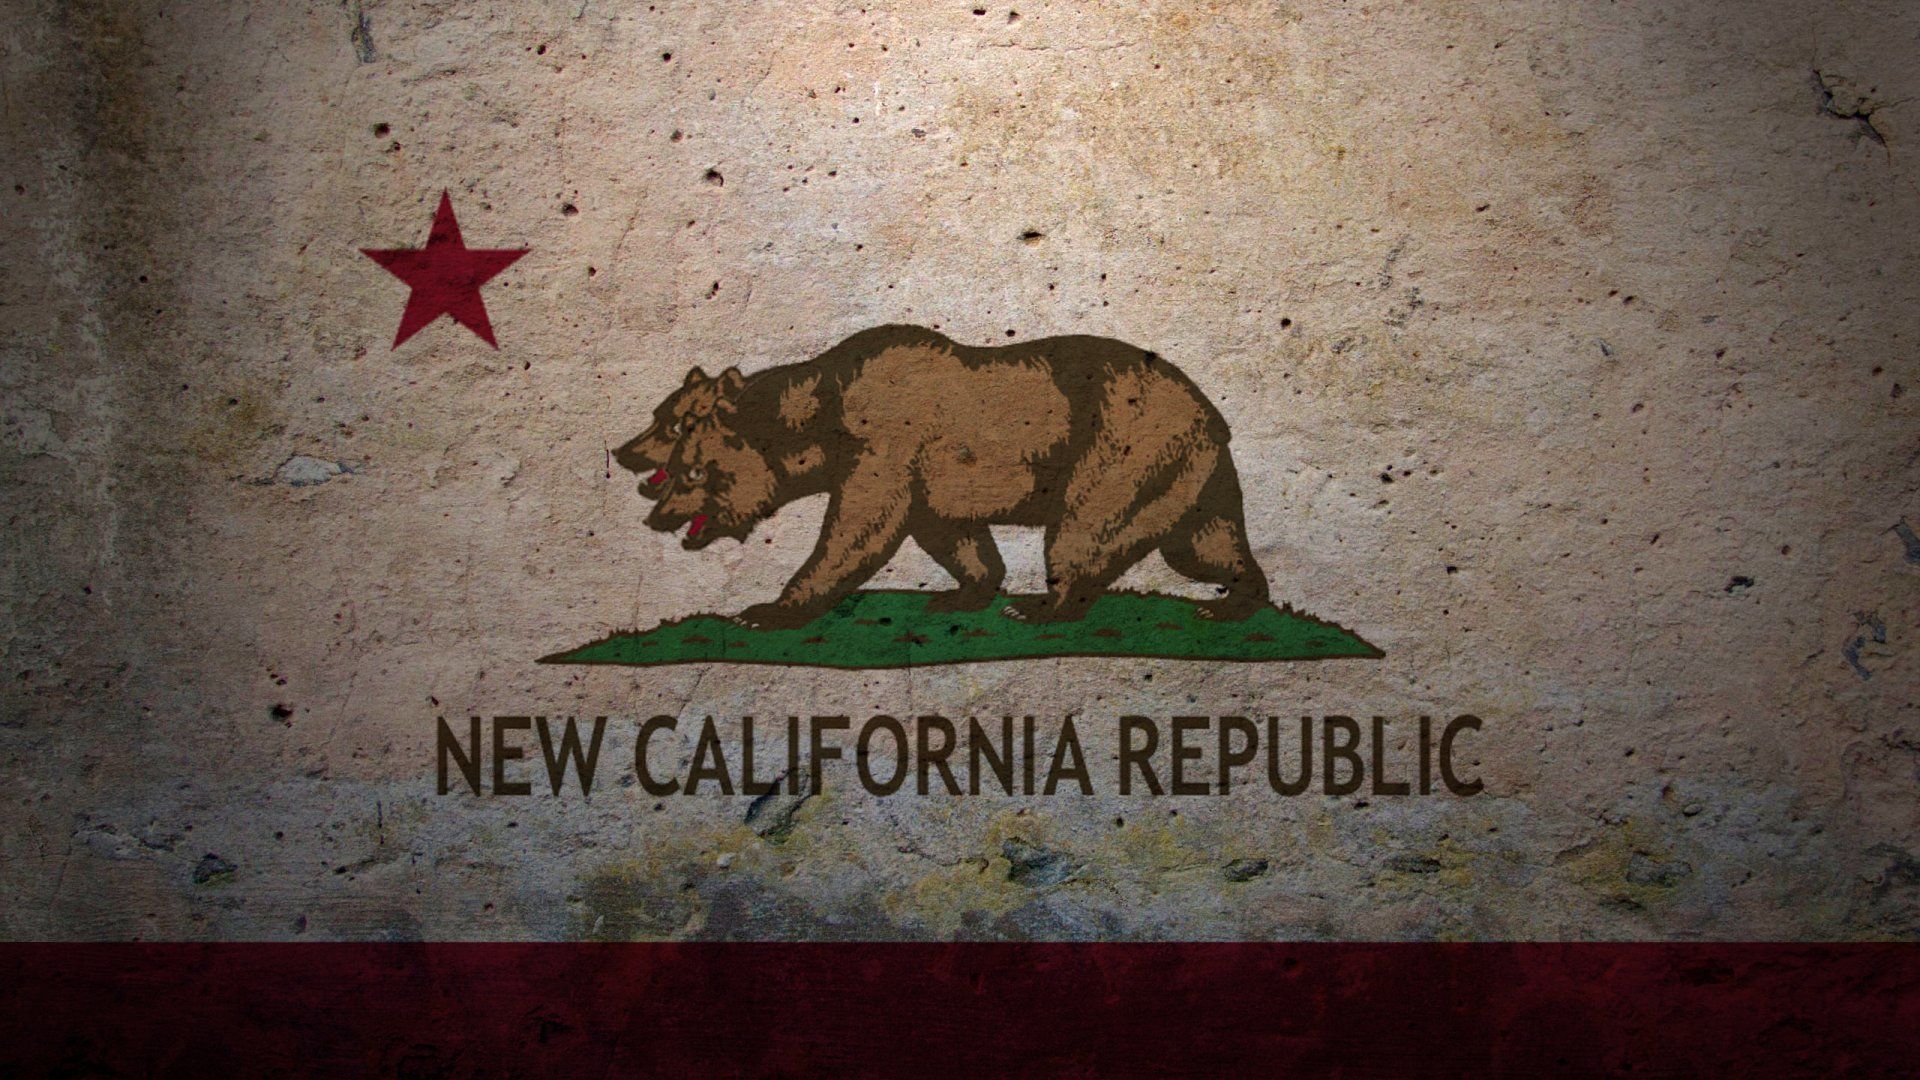 New California Republic HD Wallpaper 1920x1080 ID54653